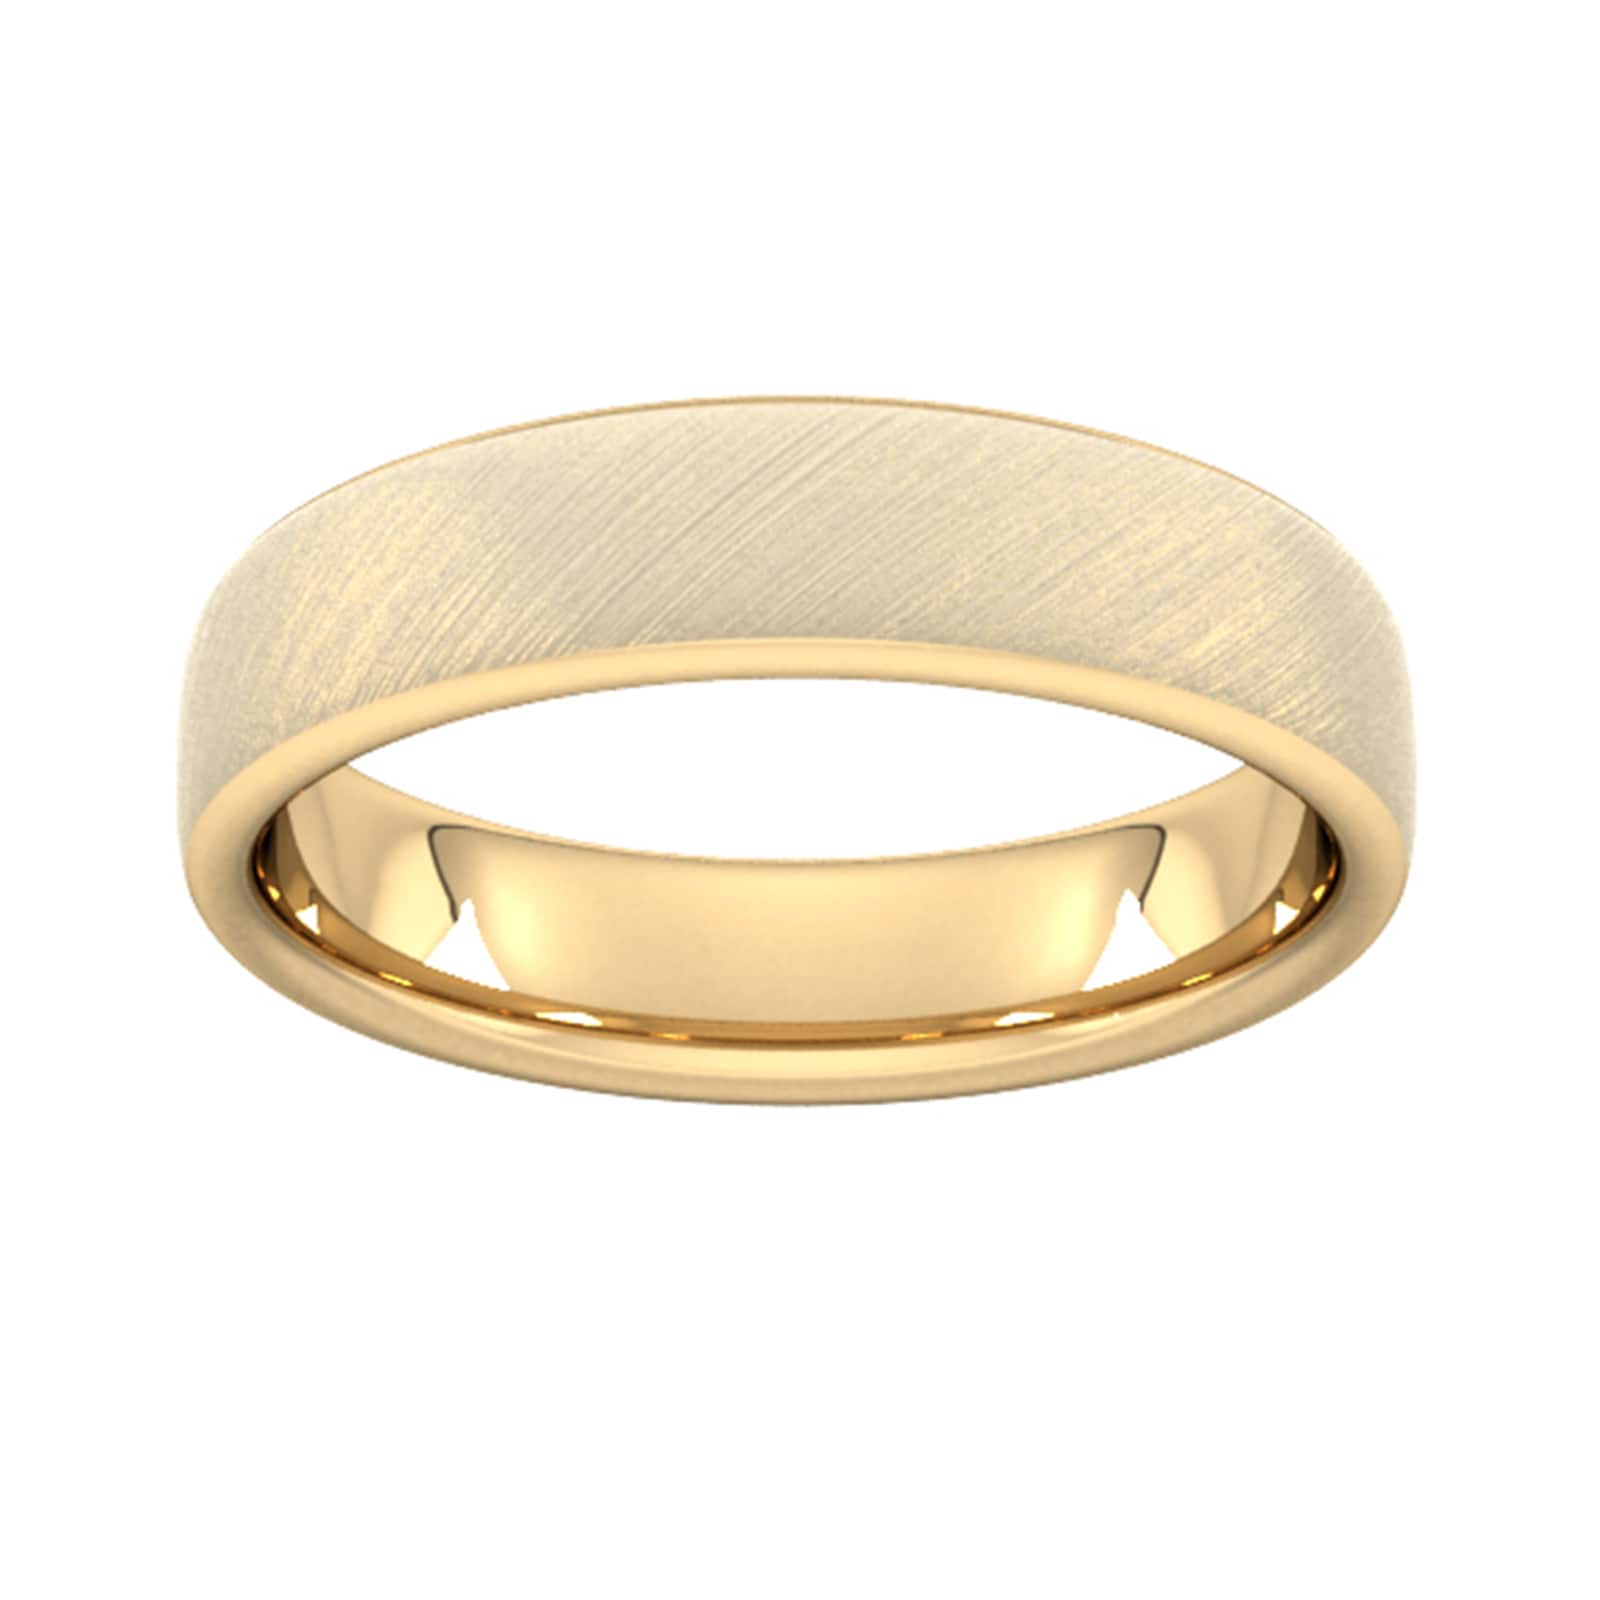 5mm Slight Court Heavy Diagonal Matt Finish Wedding Ring In 9 Carat Yellow Gold - Ring Size U